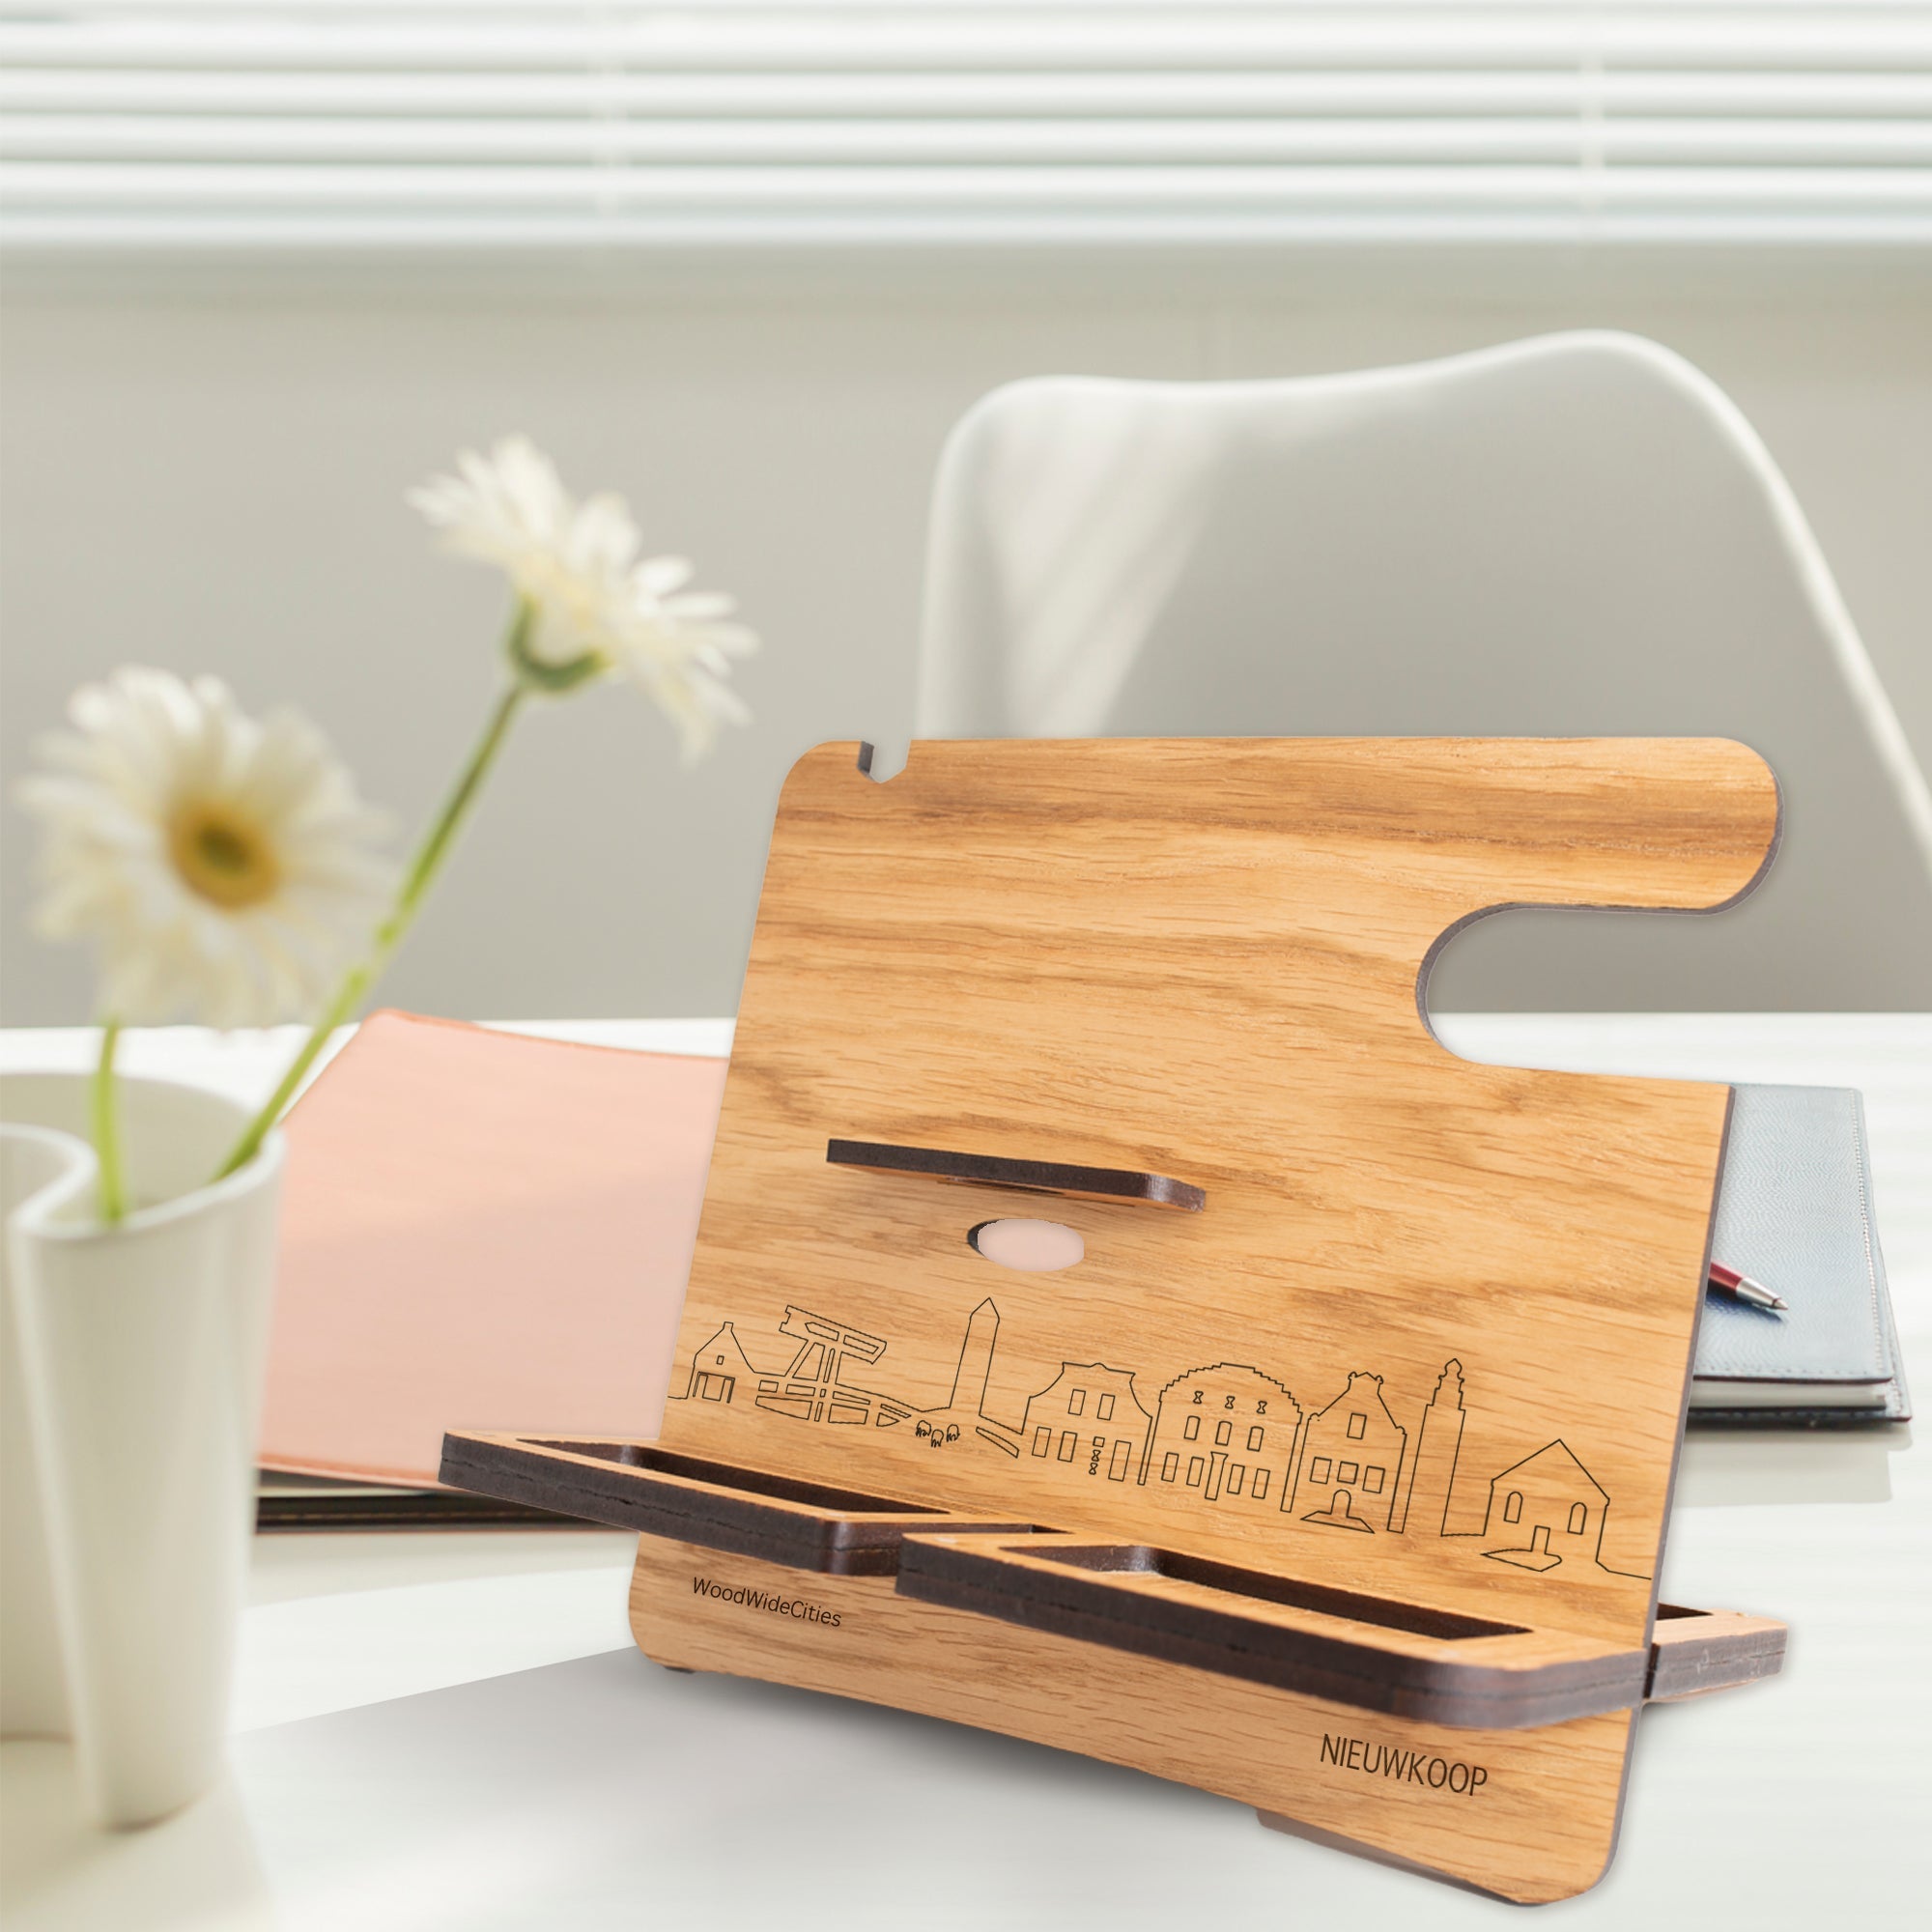 Skyline Desk Organizer Nieuwkoop houten cadeau decoratie relatiegeschenk van WoodWideCities